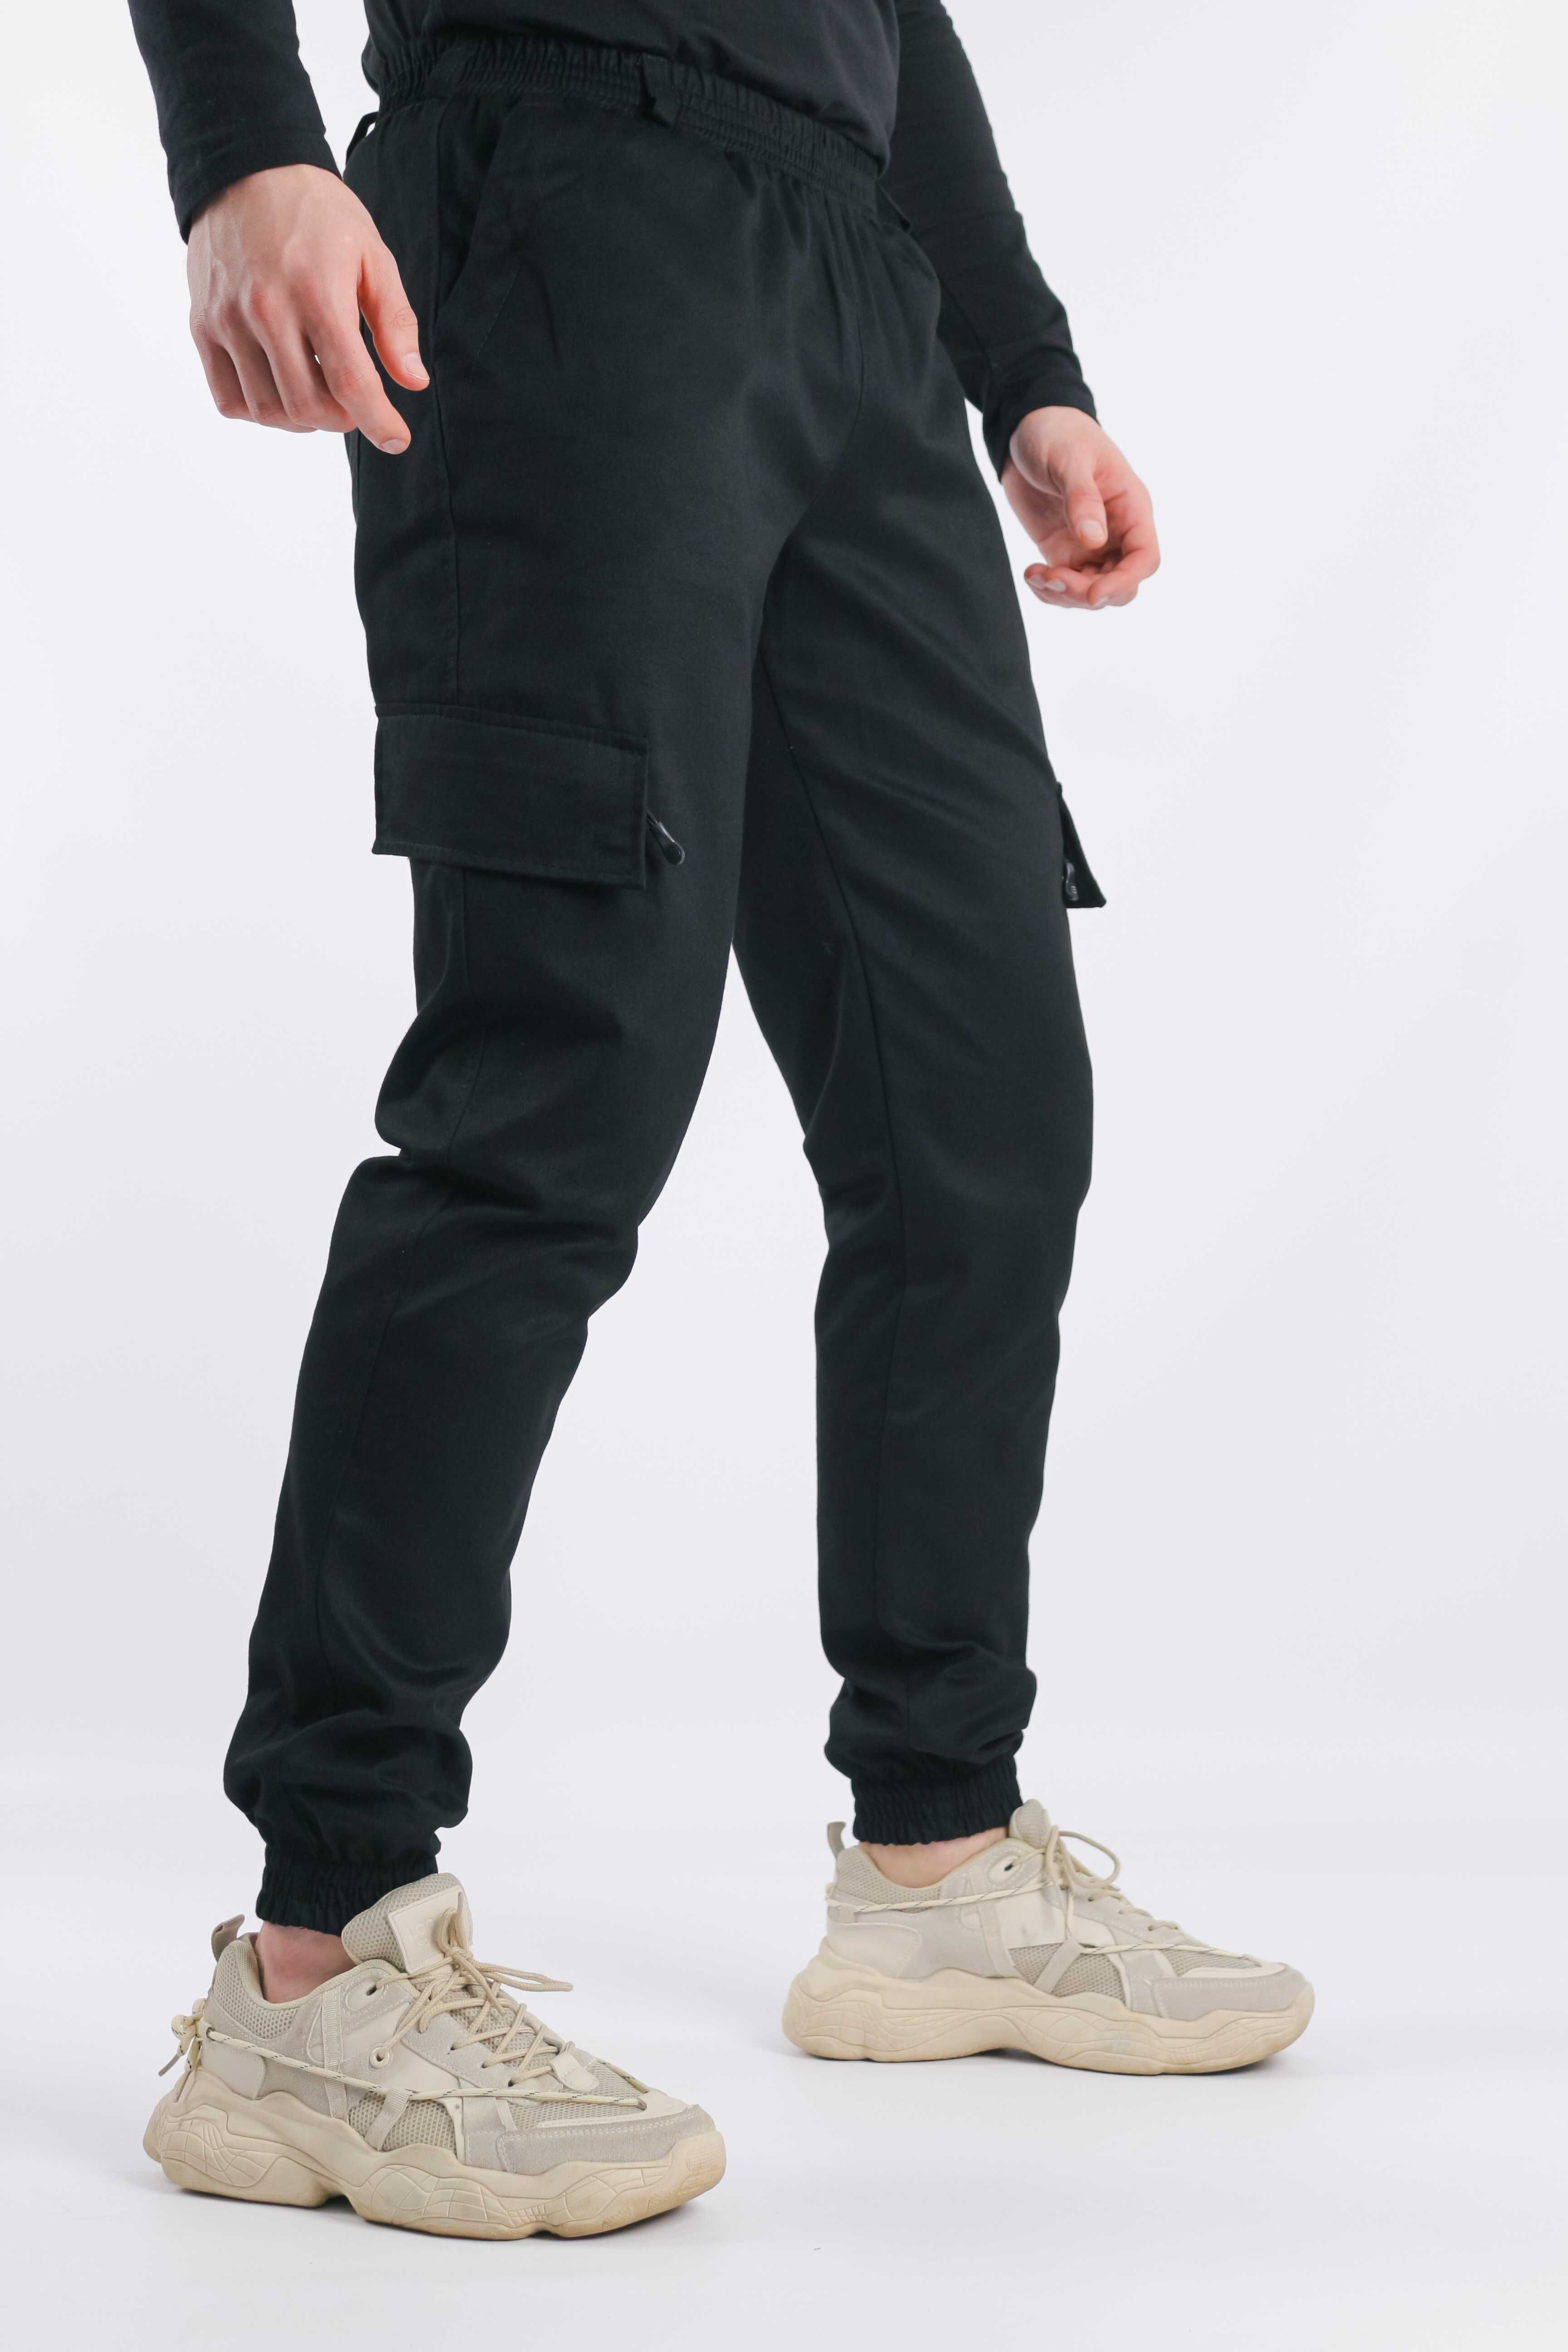 Брюки мужские штаны-карго котоновые черные весенние осенние